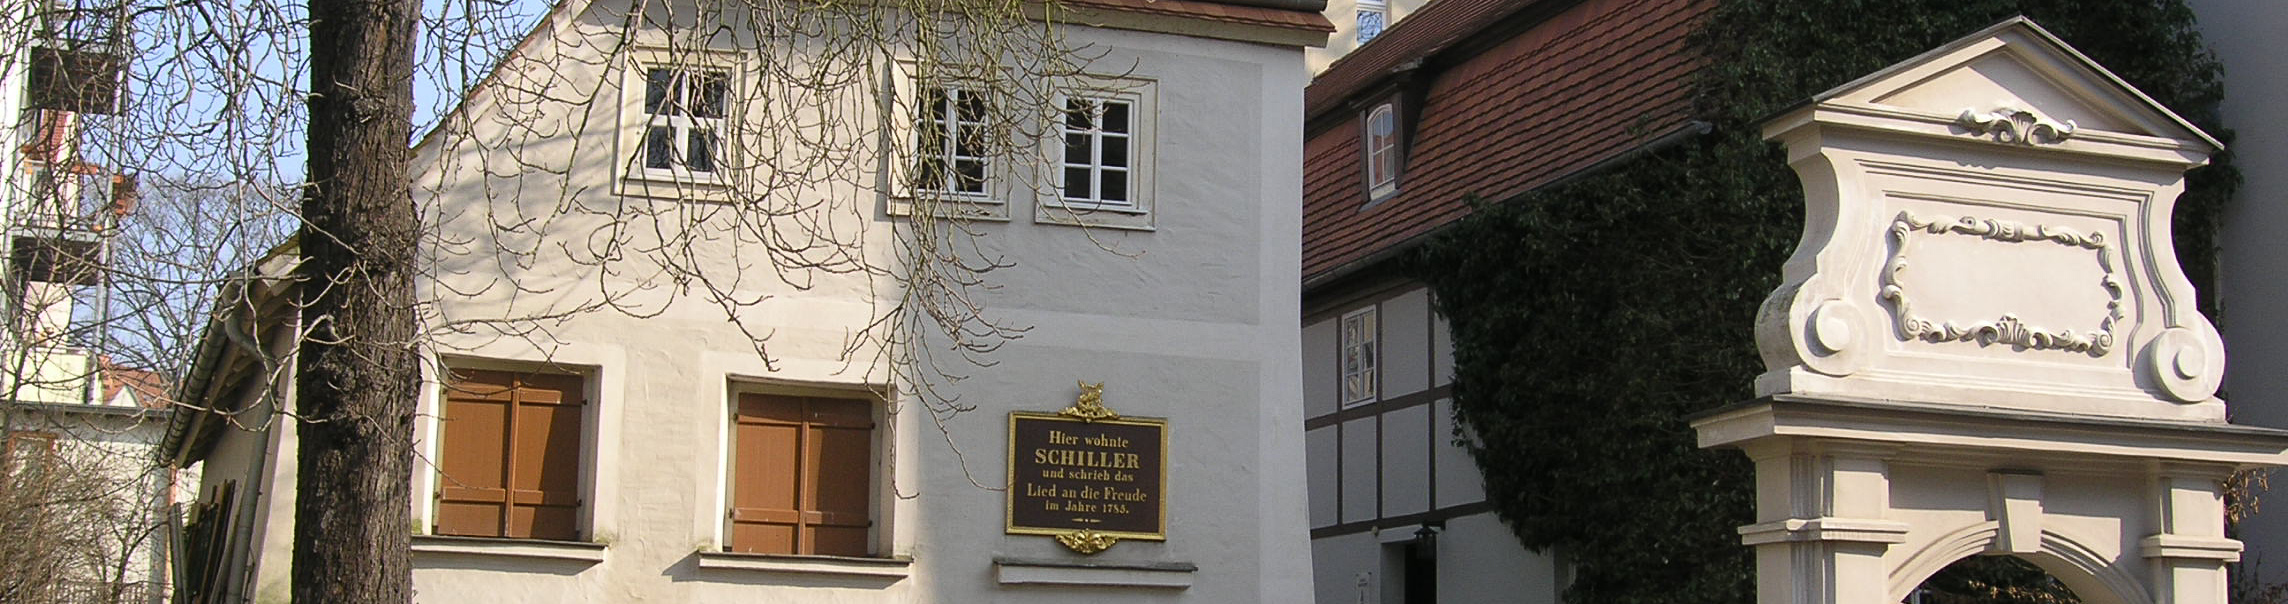 Schillerhaus Leipzig Gohlis